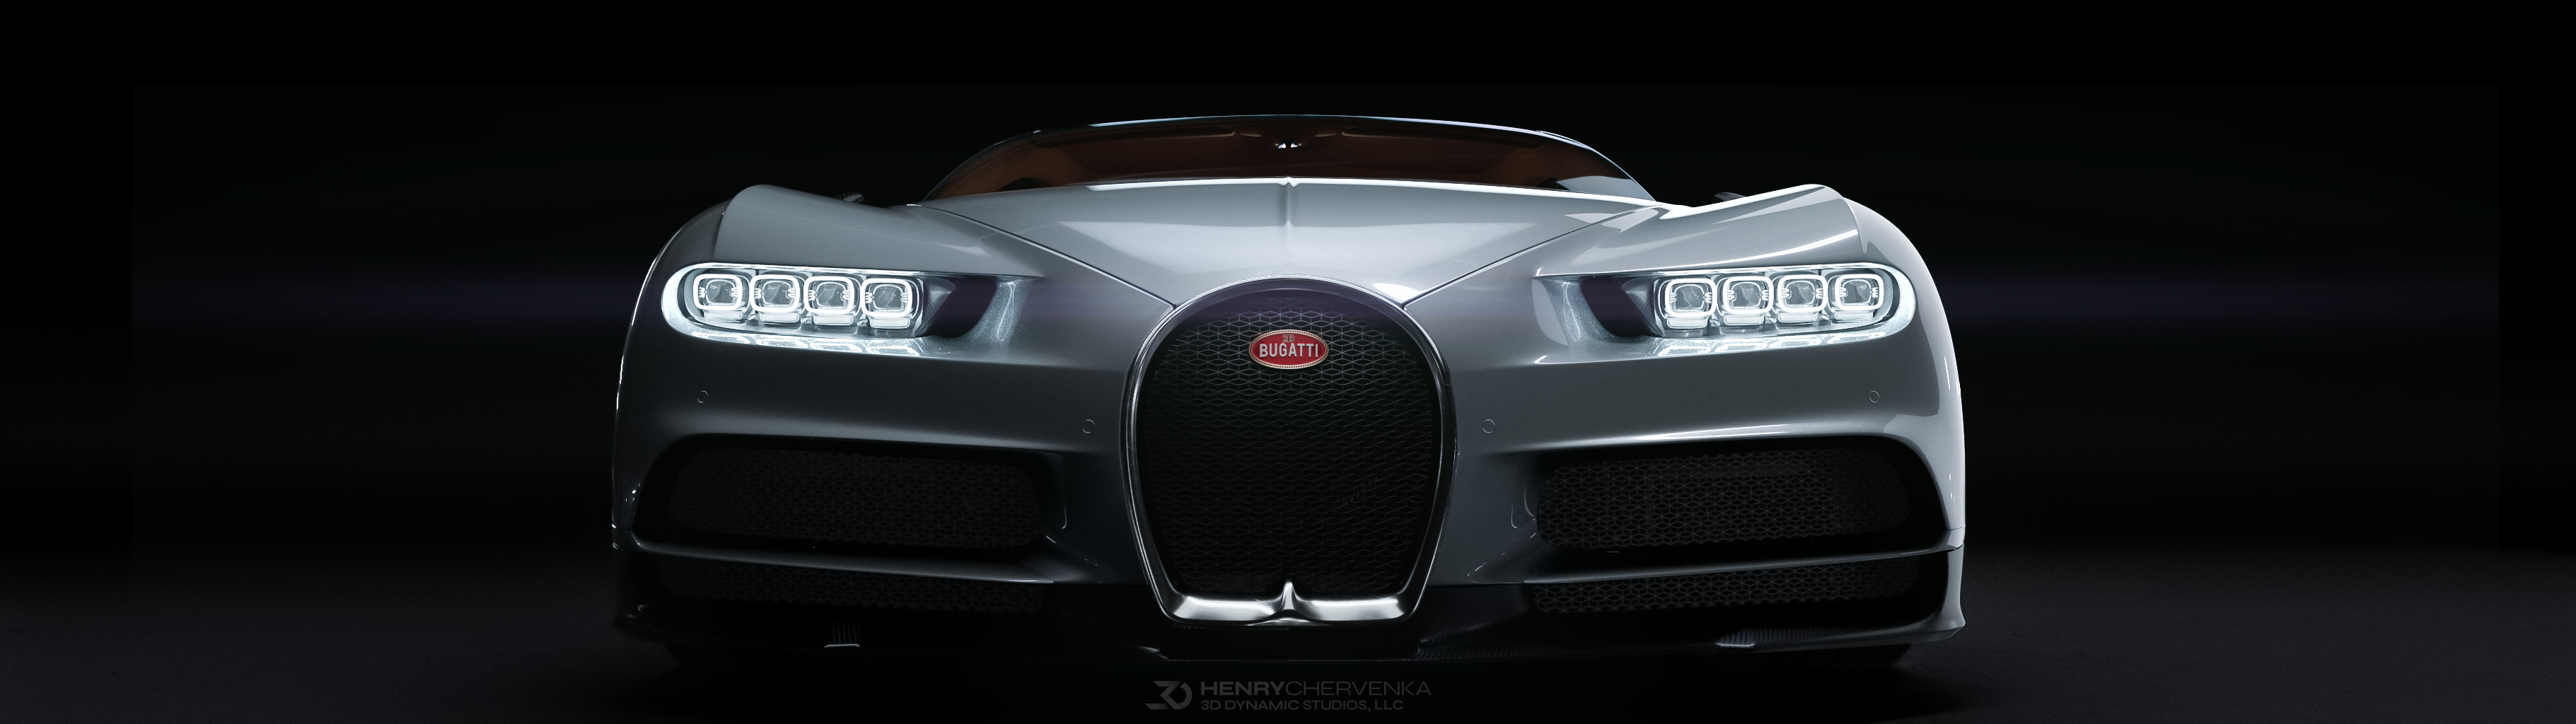 Bugatti Chiron - một trong những siêu xe nổi tiếng nhất thế giới sẽ khiến bạn trầm trồ với thiết kế đẹp mê ly và động cơ khủng. Độ phân giải 4K sẽ mang đến màn hình sống động và cho bạn những trải nghiệm tuyệt vời.